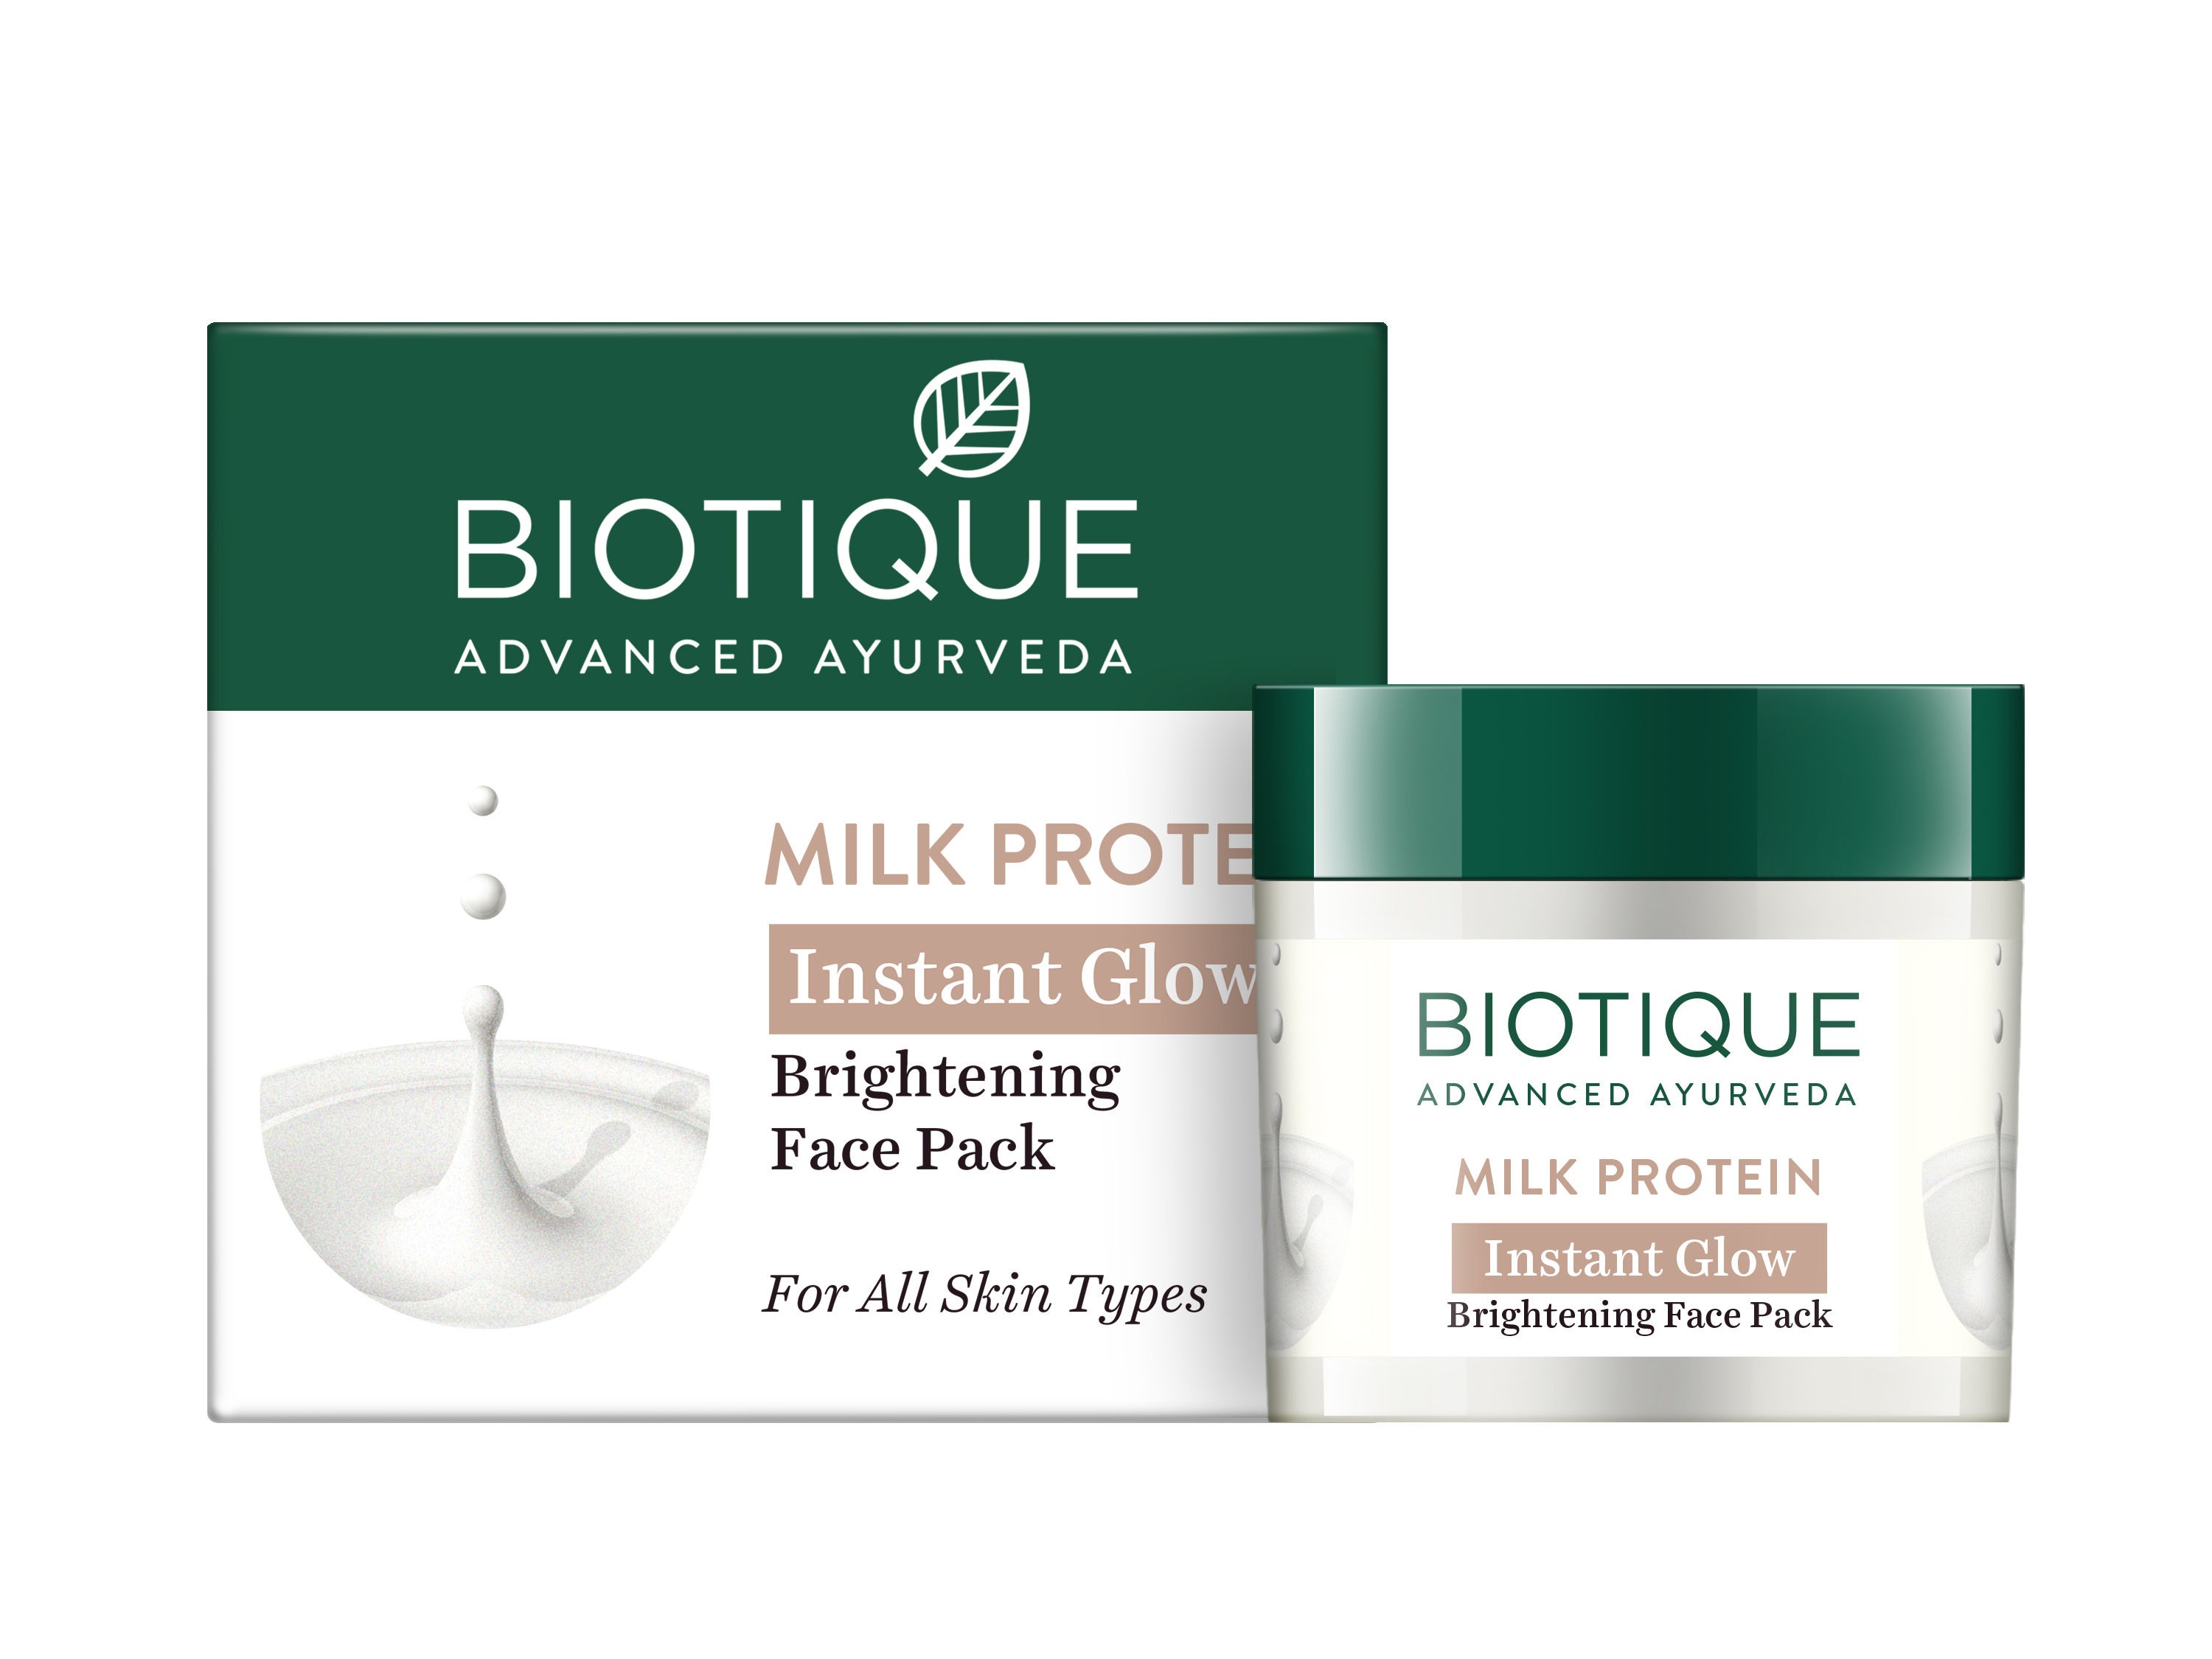 Biotique Milk Protein Instant Glow Brightening Face Pack